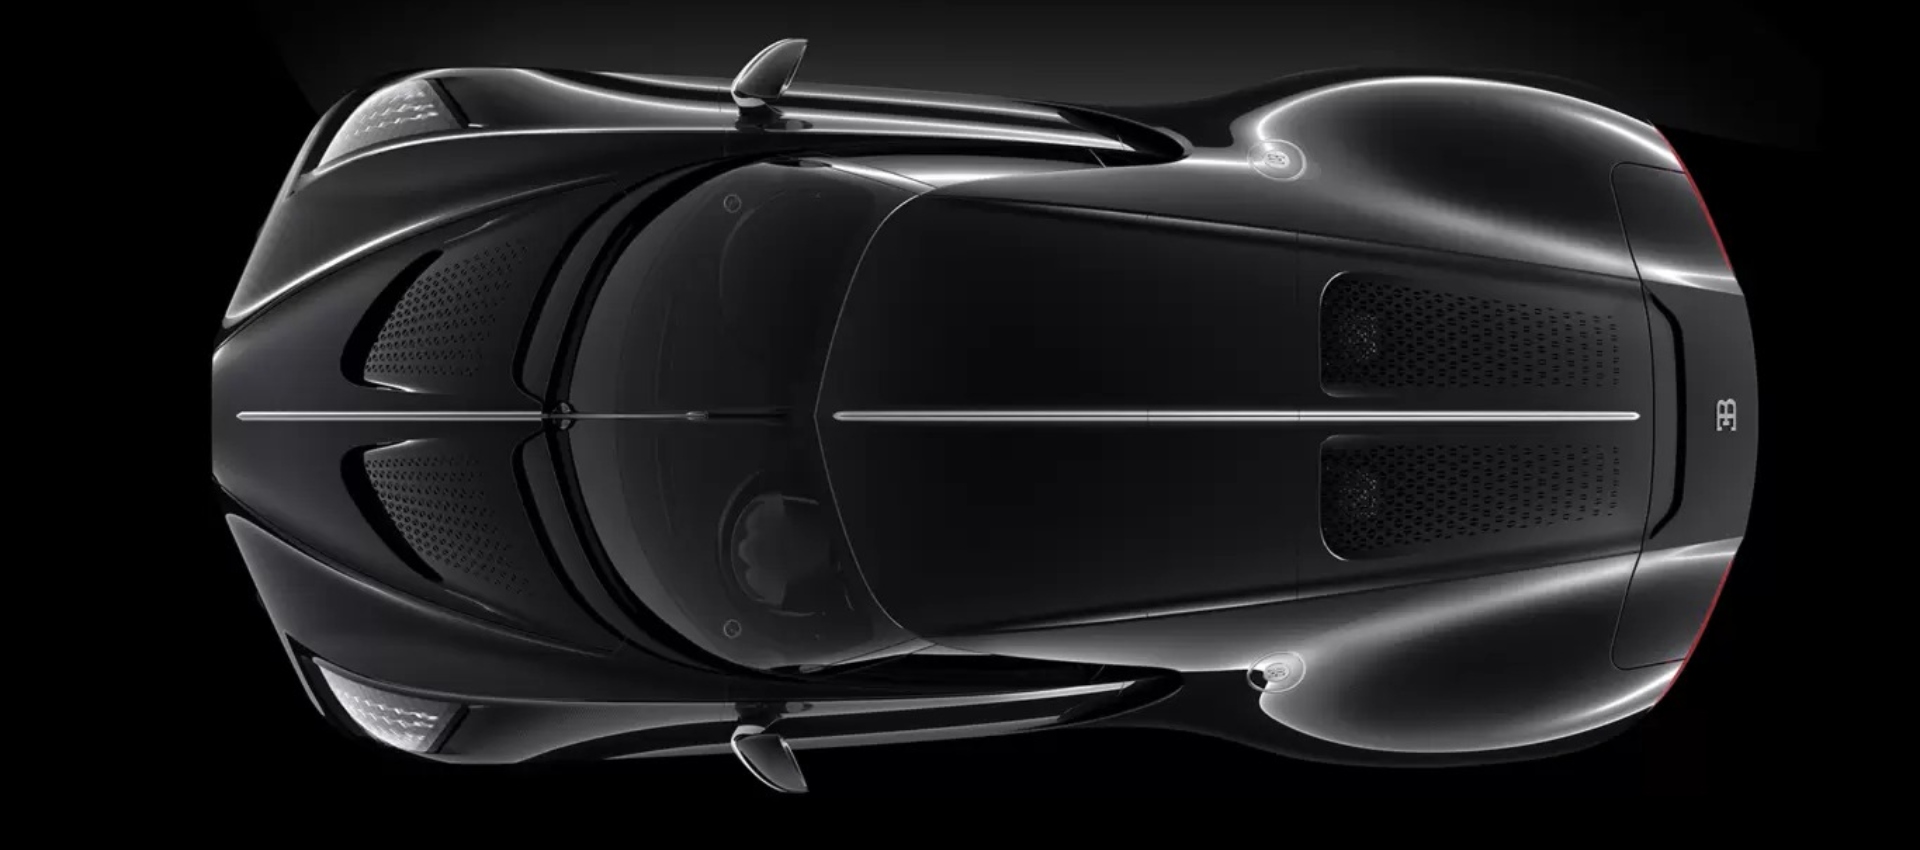 Este Bugatti es el auto más caro del mundo: ¿Cuánto cuesta?